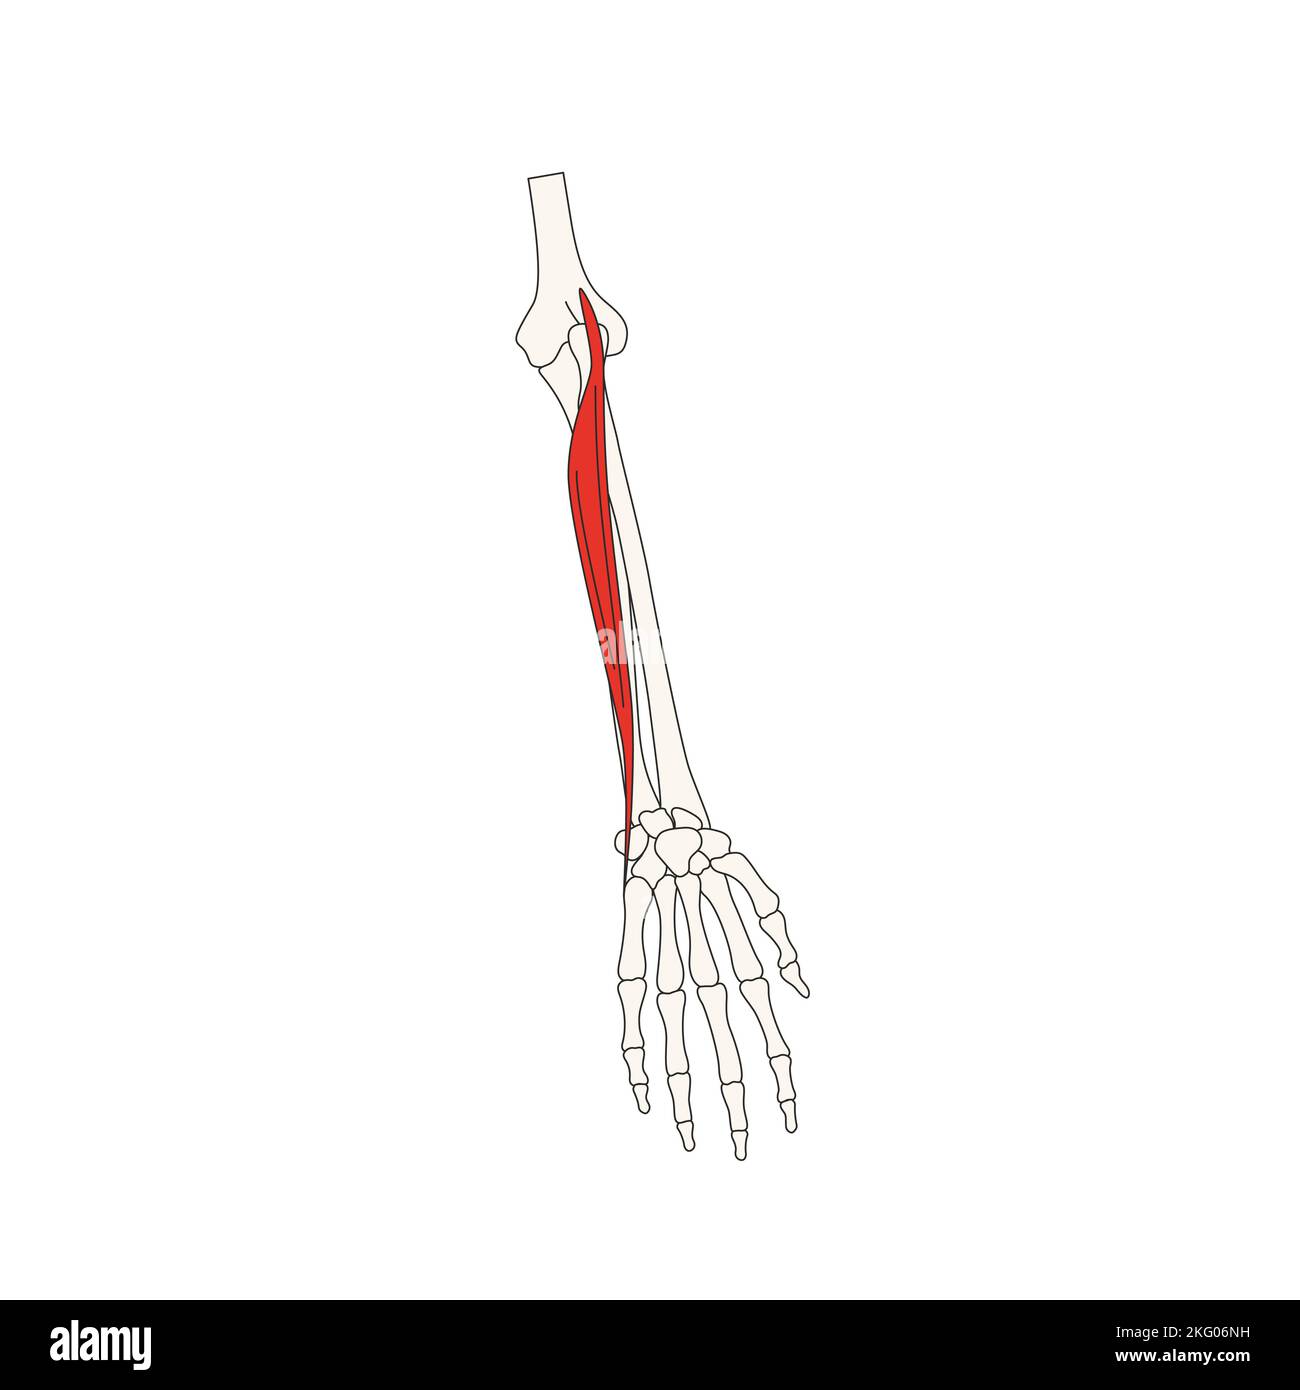 human anatomy drawing extensor carpi ulnaris Stock Photo